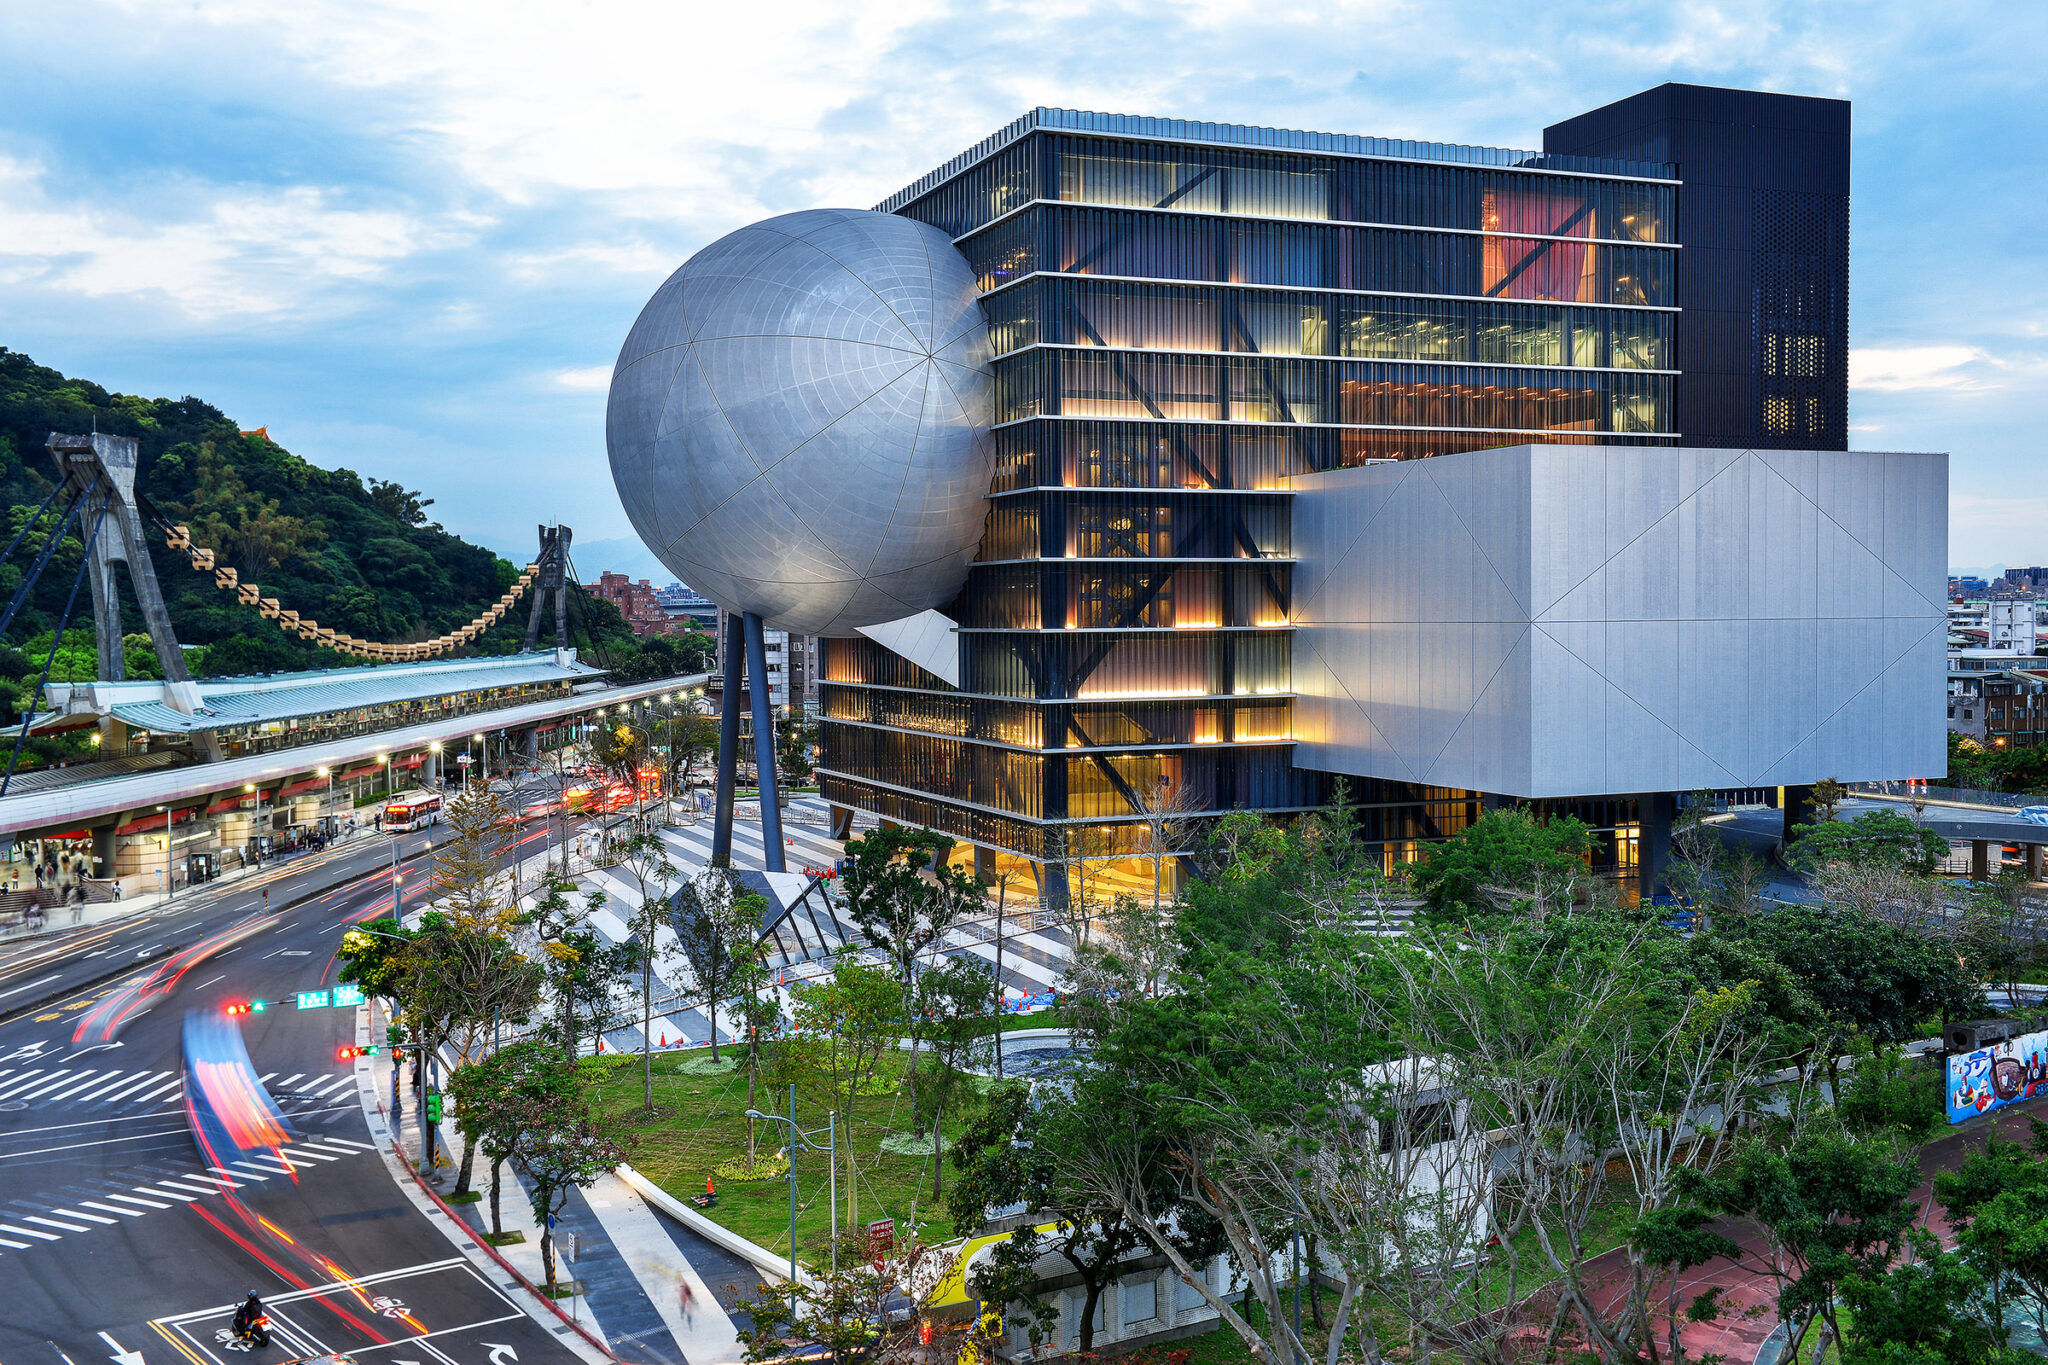 Omaによる 台湾の 台北パフォーミングアーツセンター 約14年の歳月を経て完成した舞台芸術の為の施設 中央のキューブに球や直方体の形をした3つの劇場が差し込まれた構成を特徴とし 全体を貫く パブリック ループ が市民を内部に招き入れ様々な体験を提供